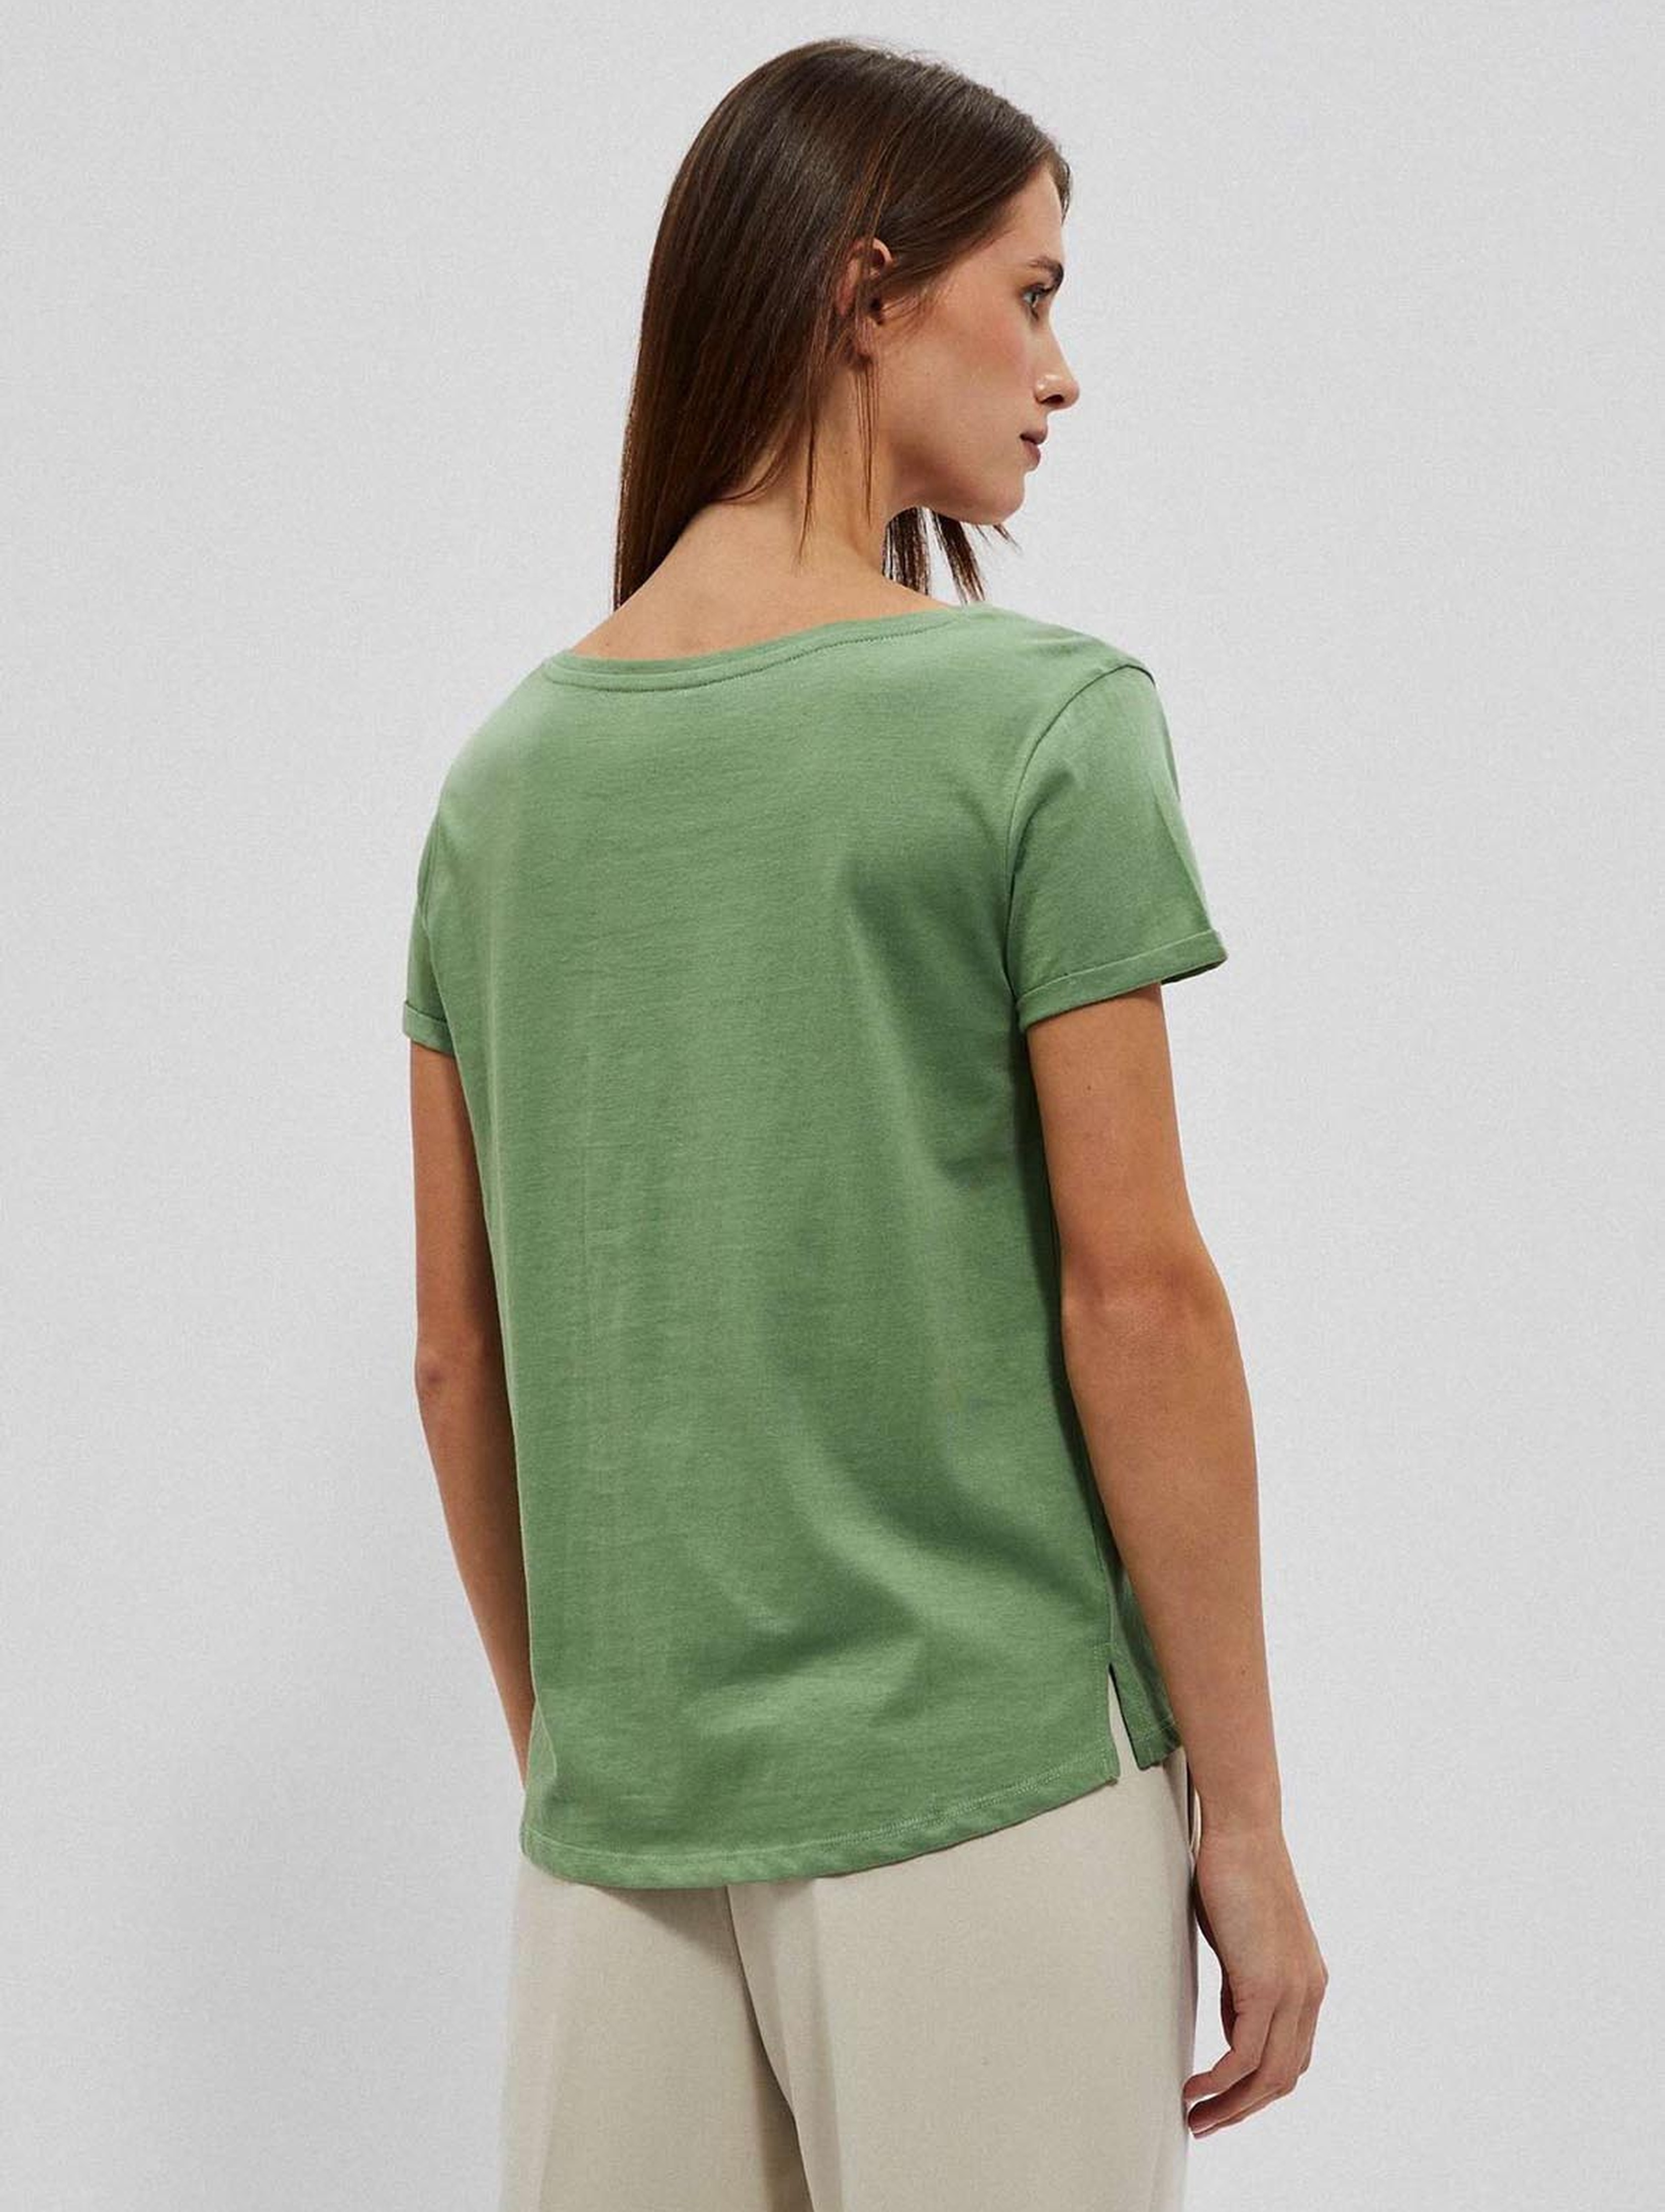 Bawełniany oliwkowy t-shirt damski z kieszonką